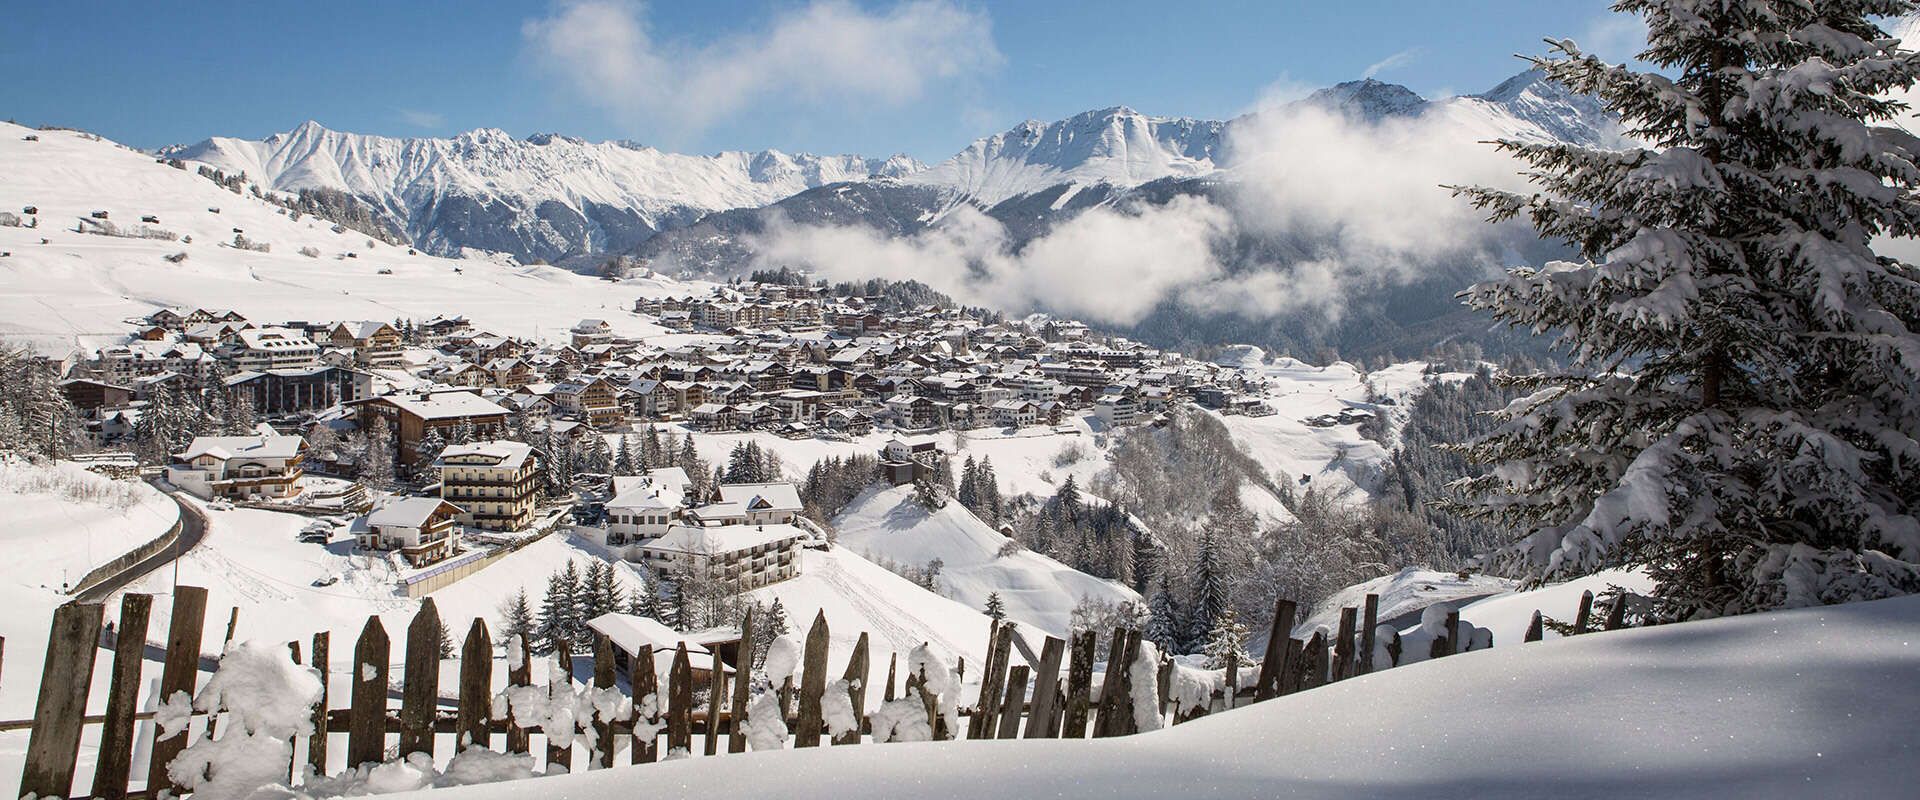 Serfaus village view in winter